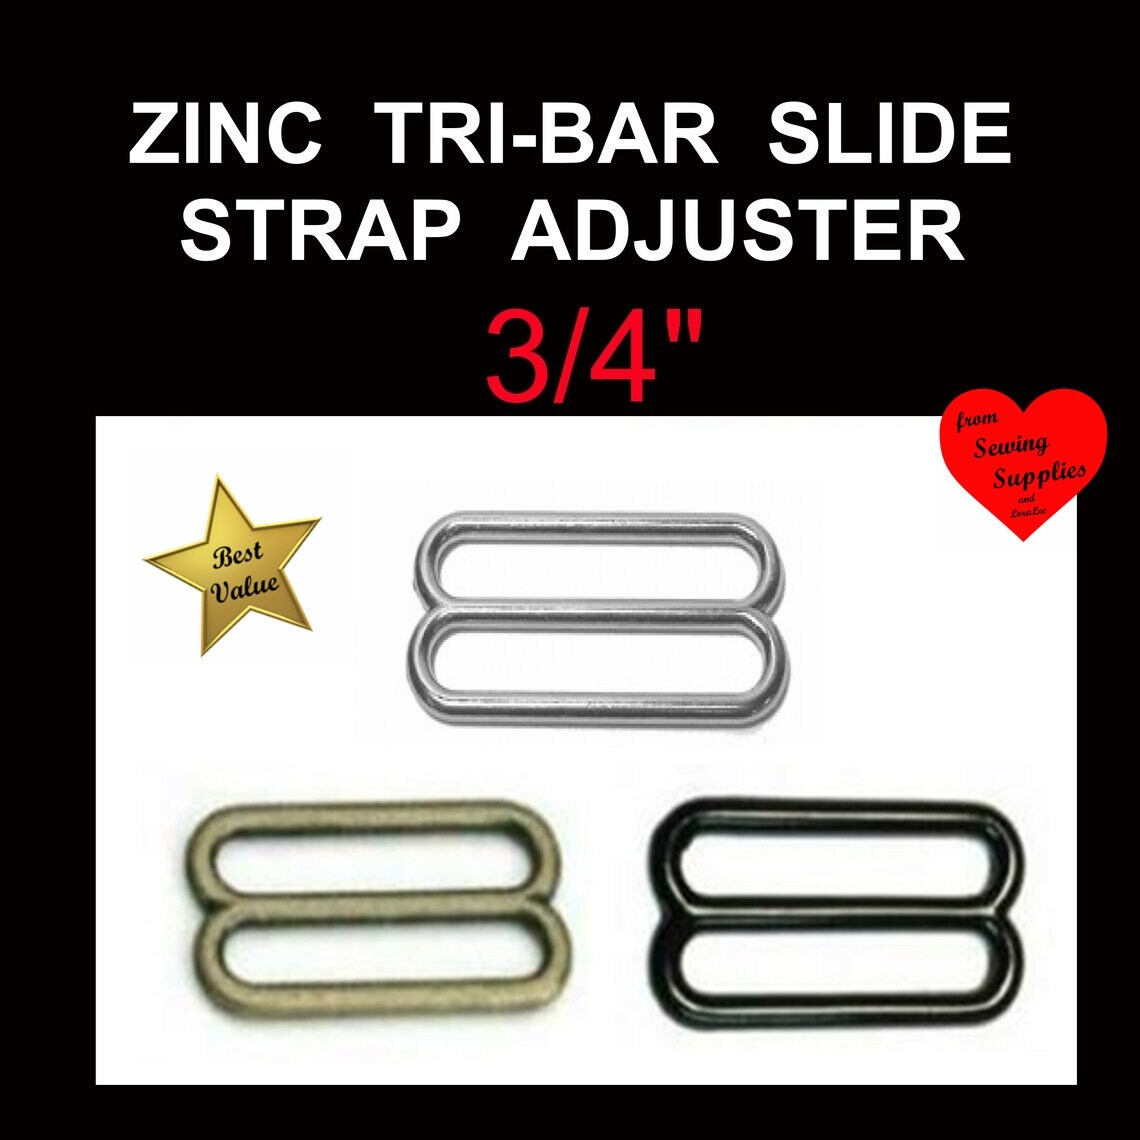 Slide Adjuster 1, 6 Pack, Strap Adjuster, Purse Strap Hardware, Slide Bar 